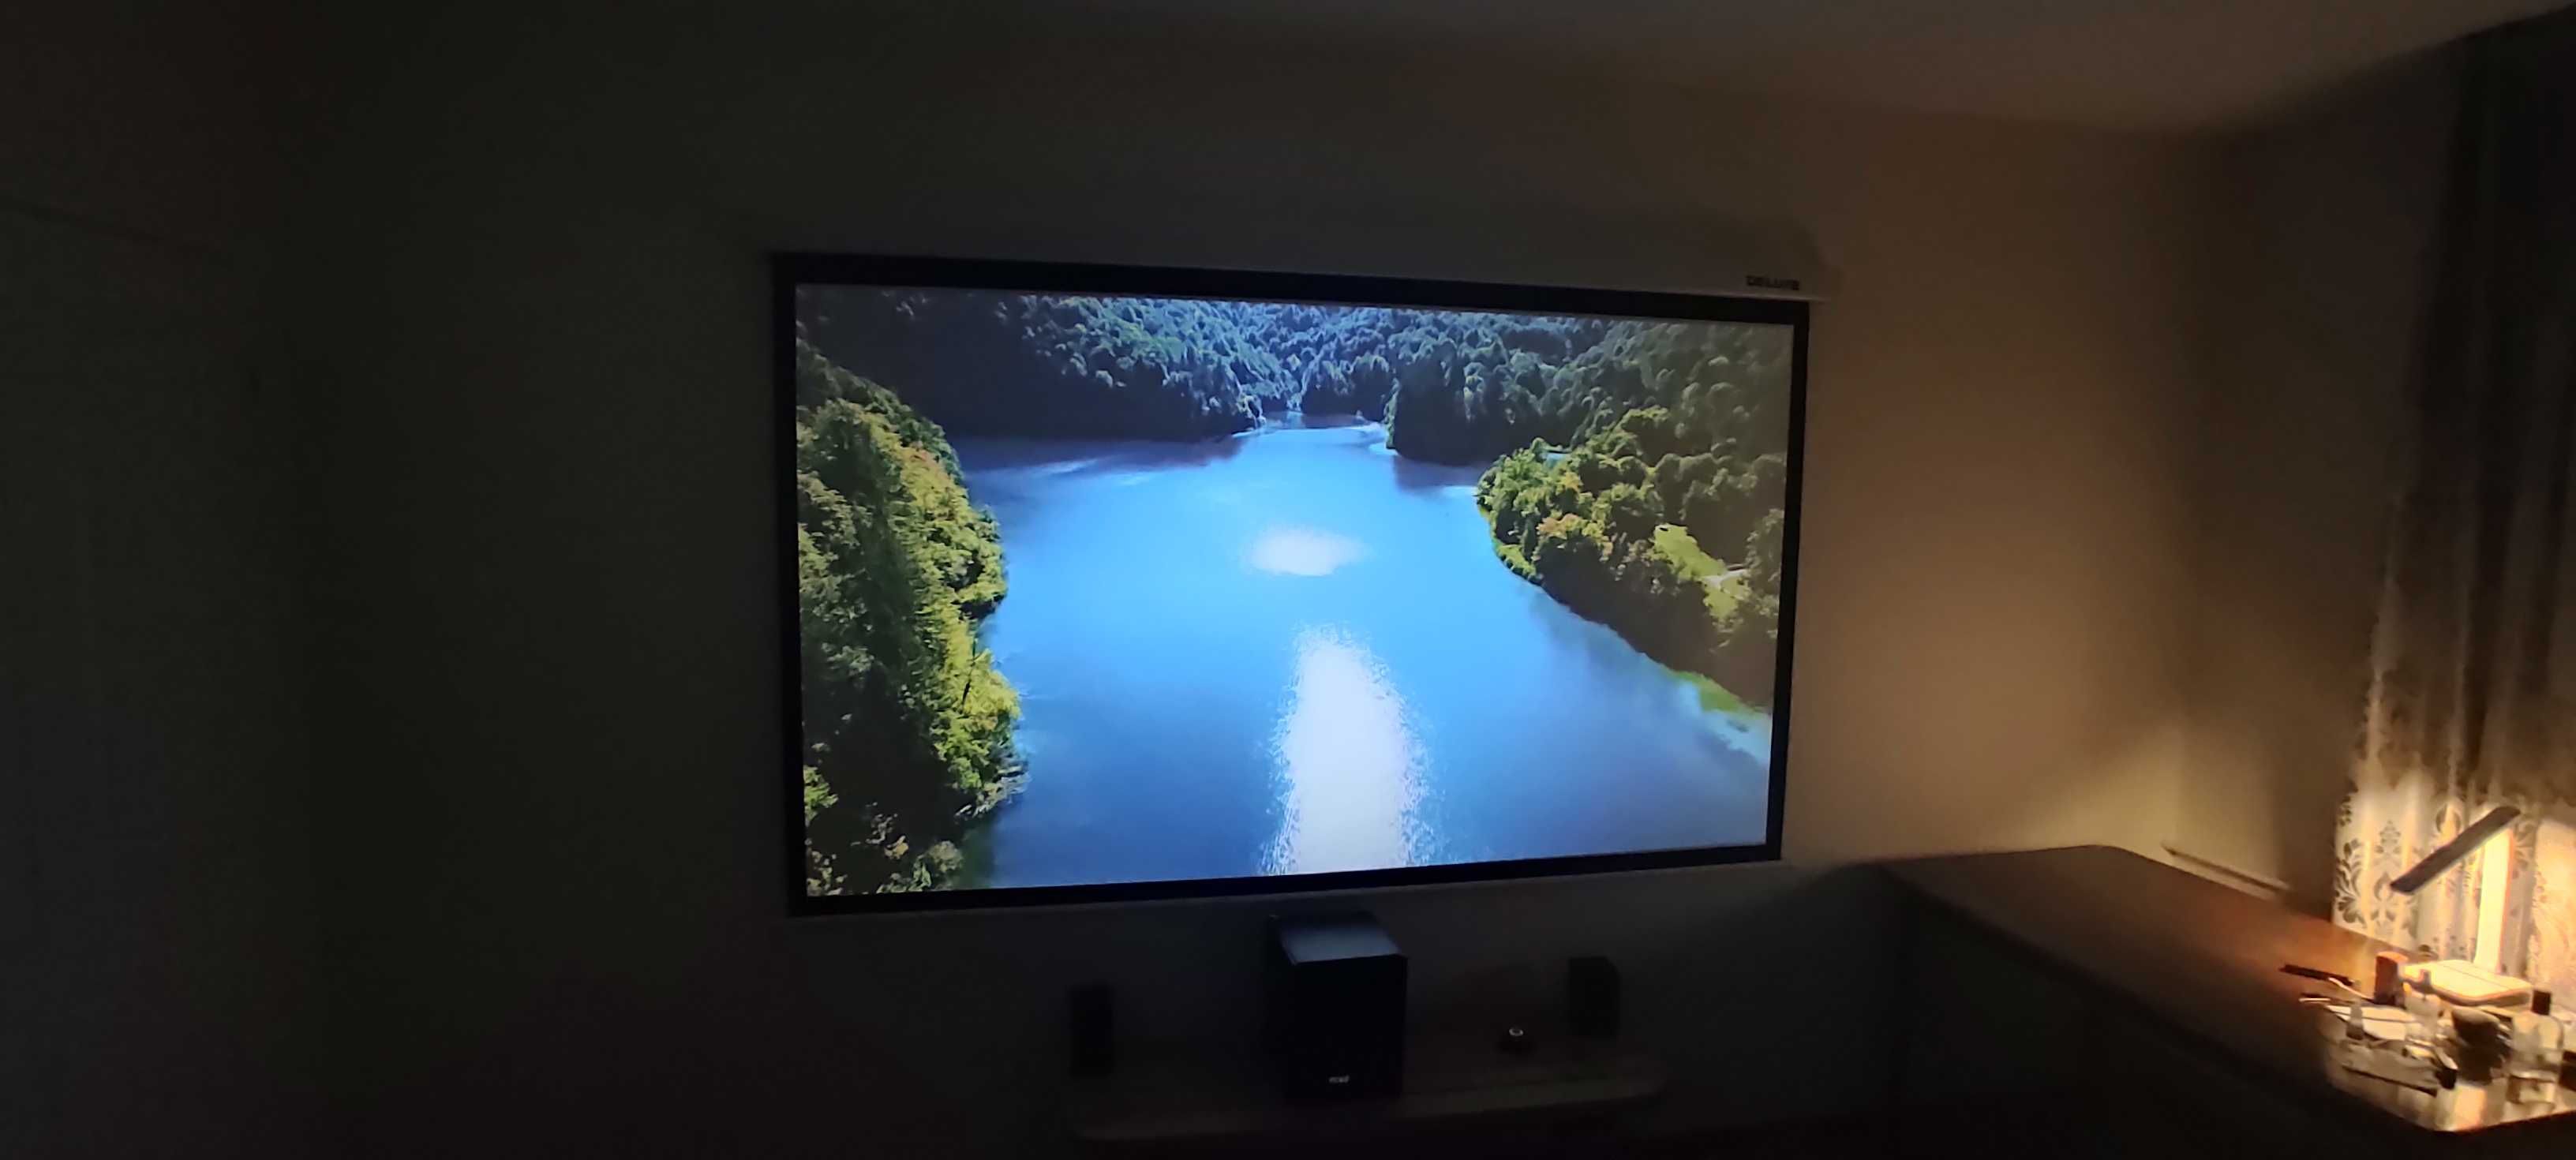 Проектор Touyinger H6 + Экран настенный Deluxe DLS 100 дюймов